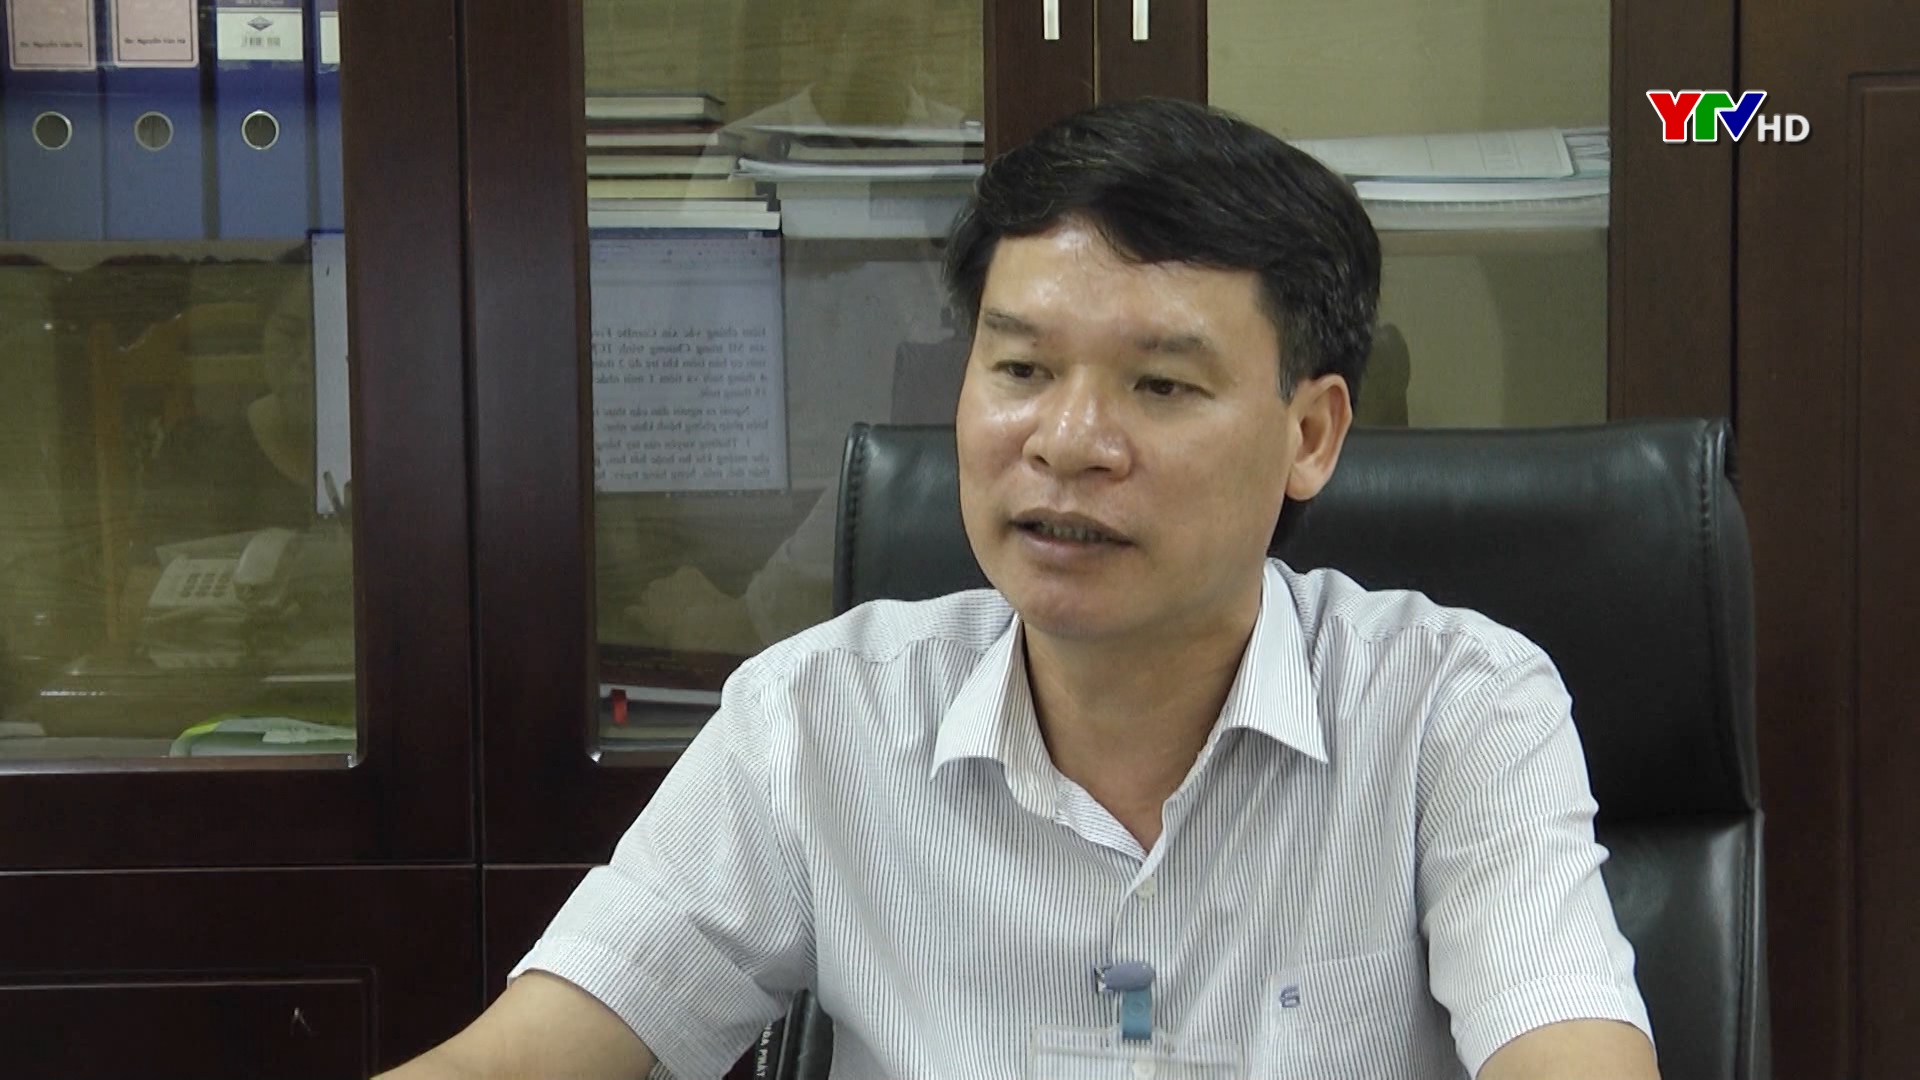 Phỏng vấn Bác sỹ Nguyễn Văn Hà – Giám đốc Trung tâm Kiểm soát bệnh tật tỉnh Yên Bái